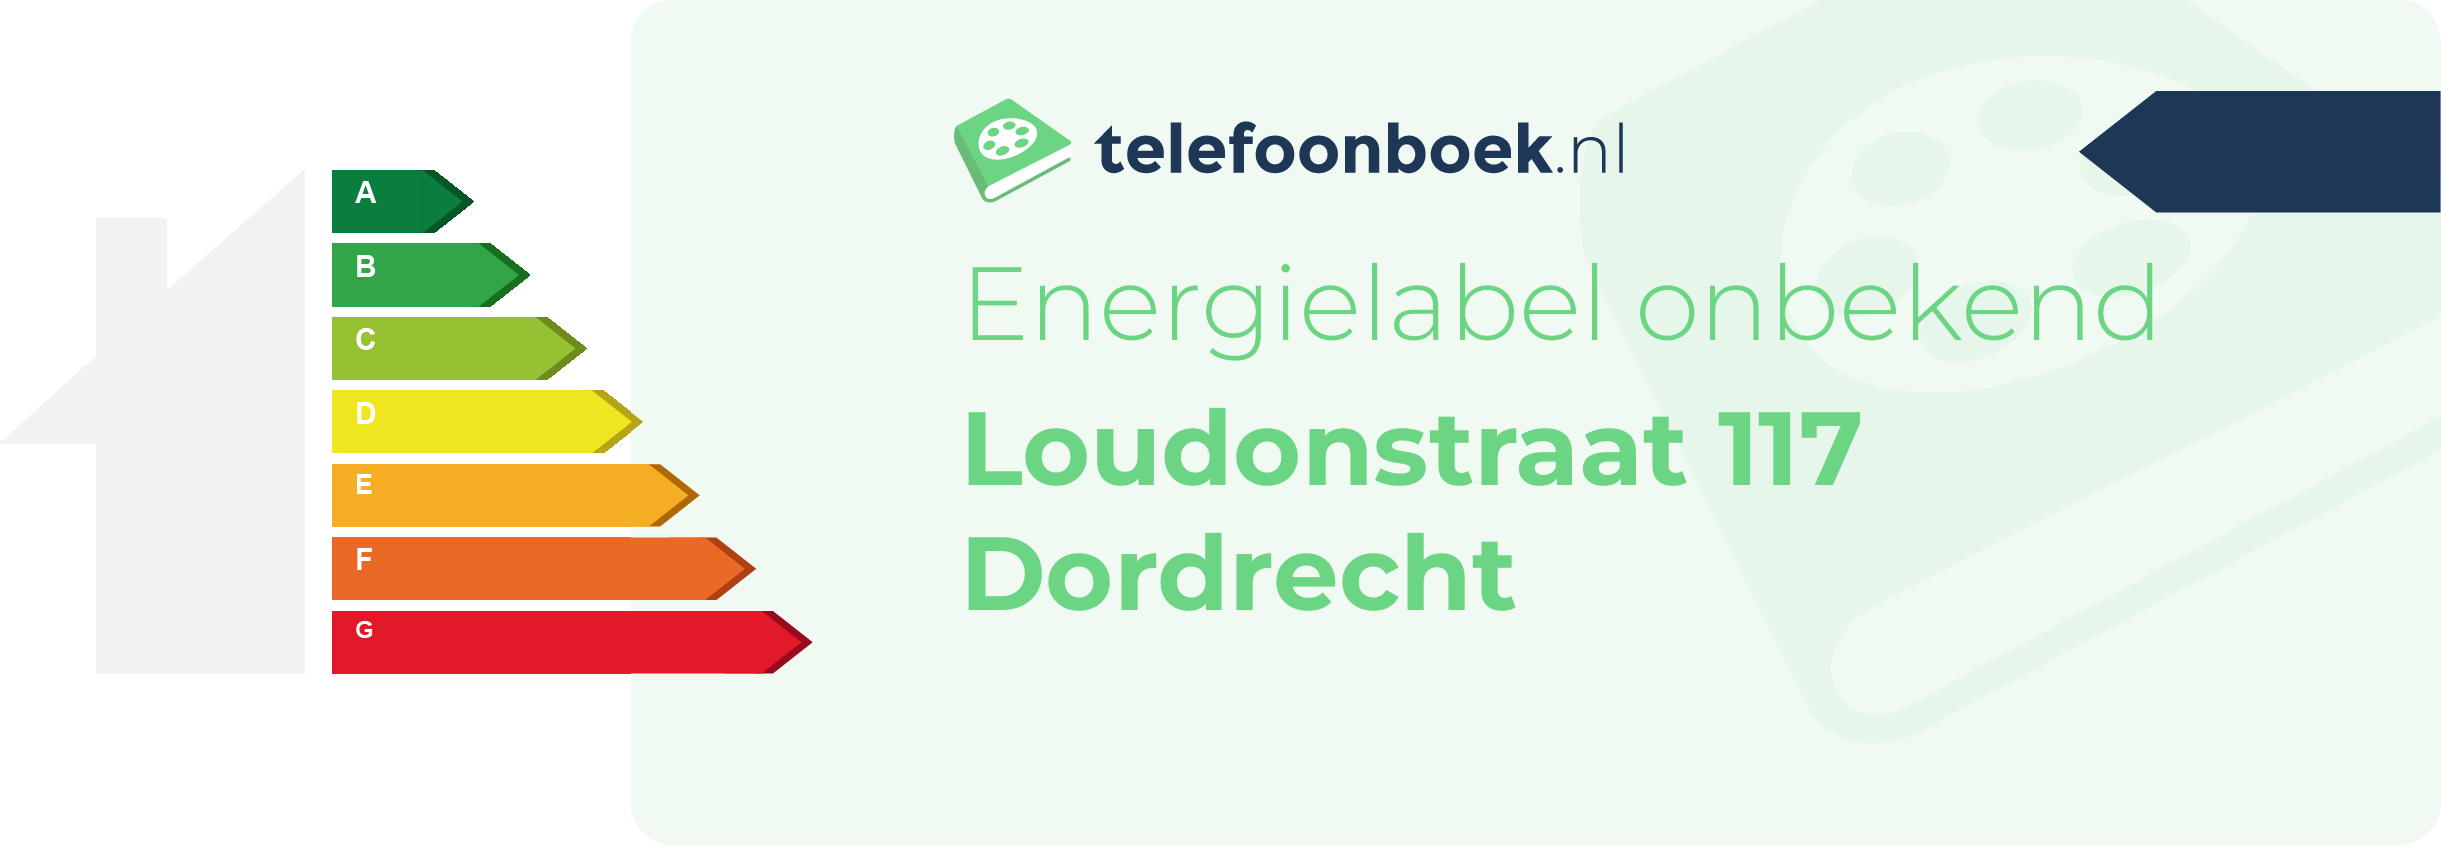 Energielabel Loudonstraat 117 Dordrecht